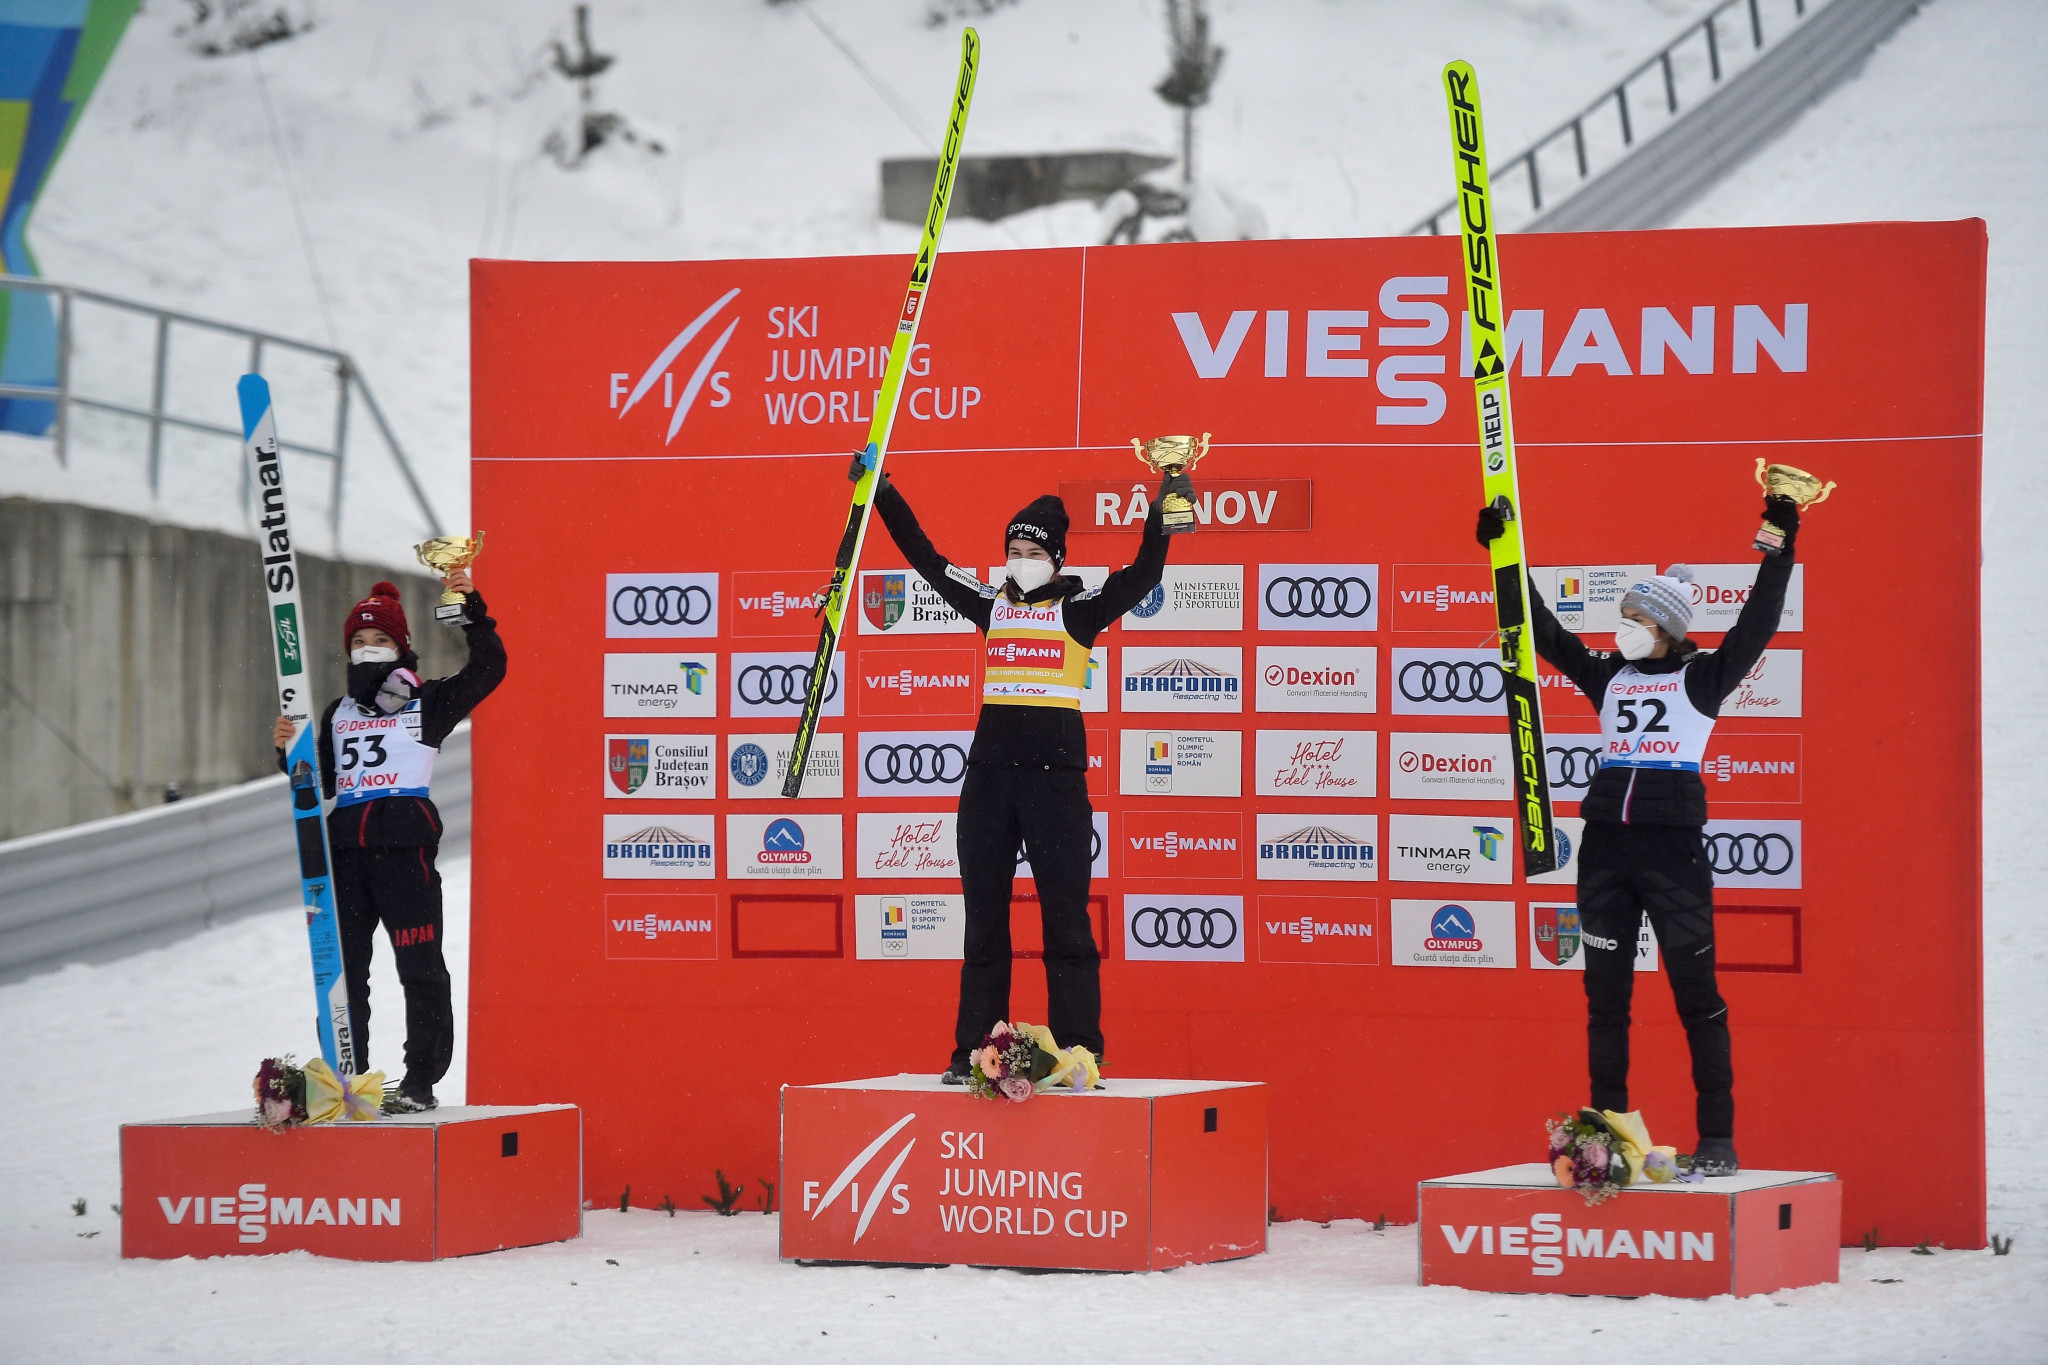 Križnar wins first Ski Jumping World Cup in Râșnov after faulty COVID-19 test sidelines leader Kramer